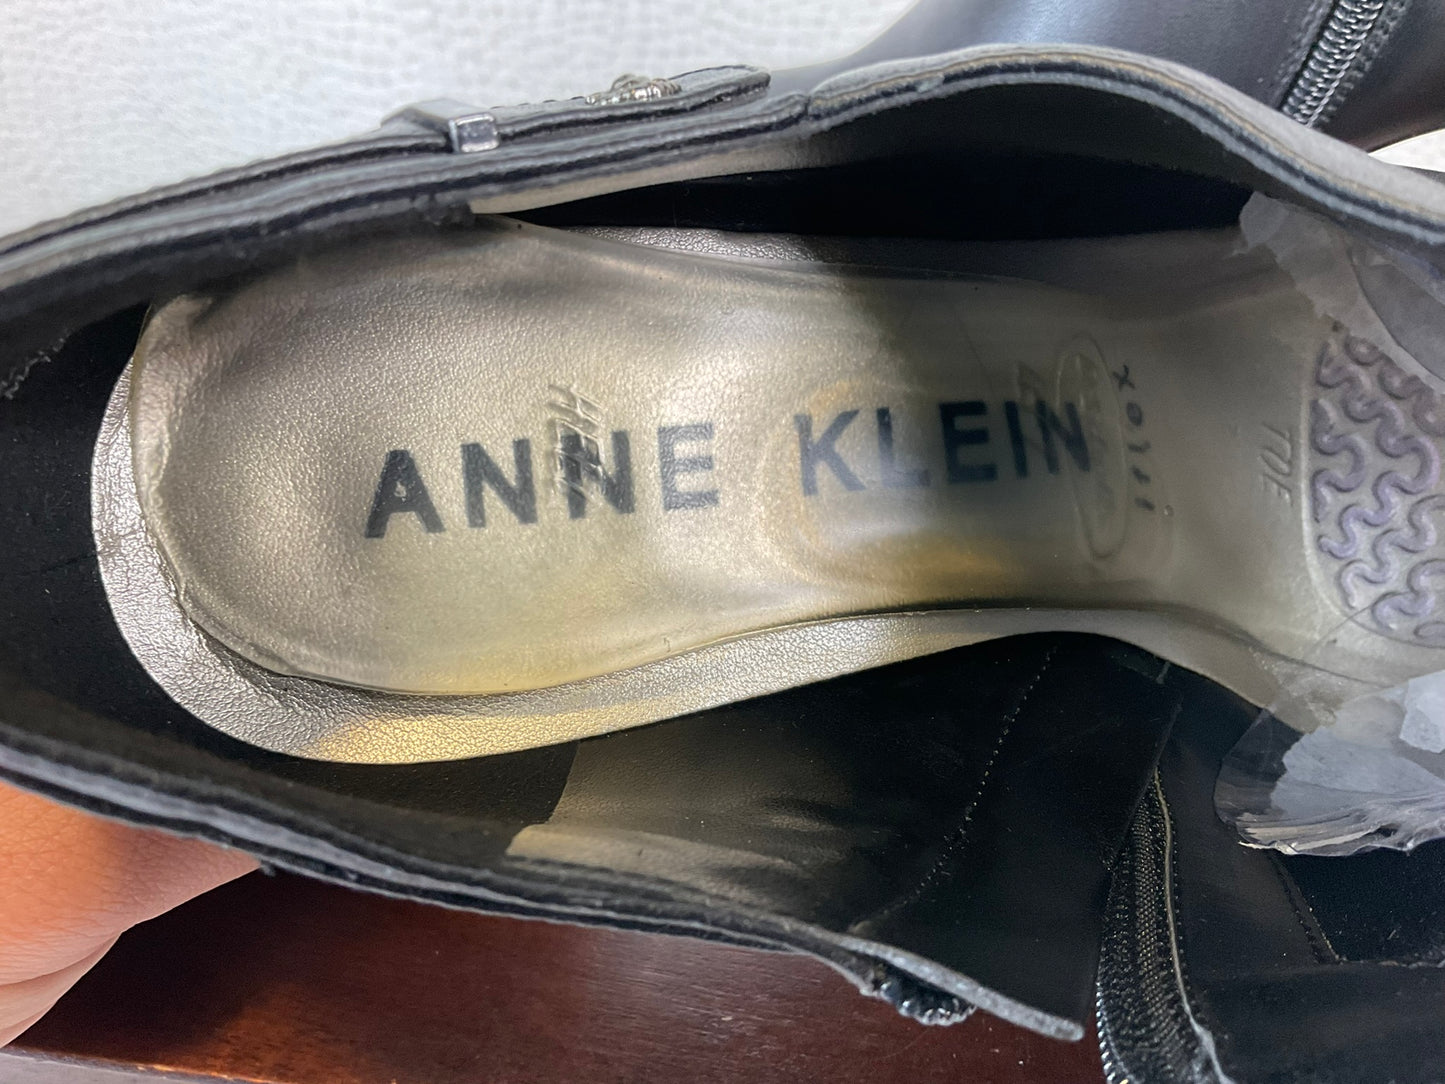 Anne Klein iFlex Booties, Size 7.5 M